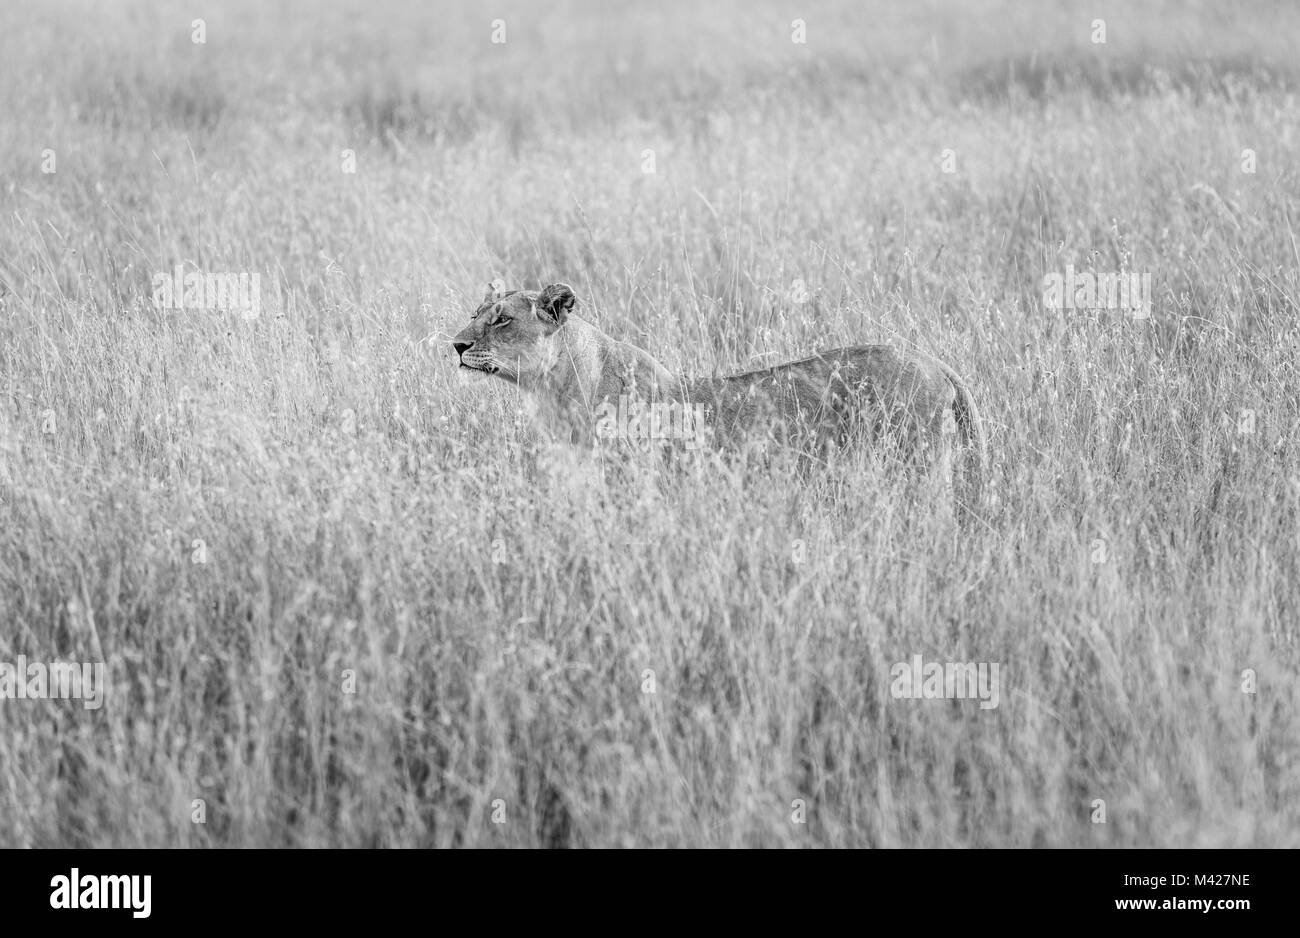 5 : grand prédateur furtif lionne vigilante (Panthera leo) est partiellement cachée dans l'herbe haute, alerte et vigilant la traque des proies, Masai Mara, Kenya Banque D'Images